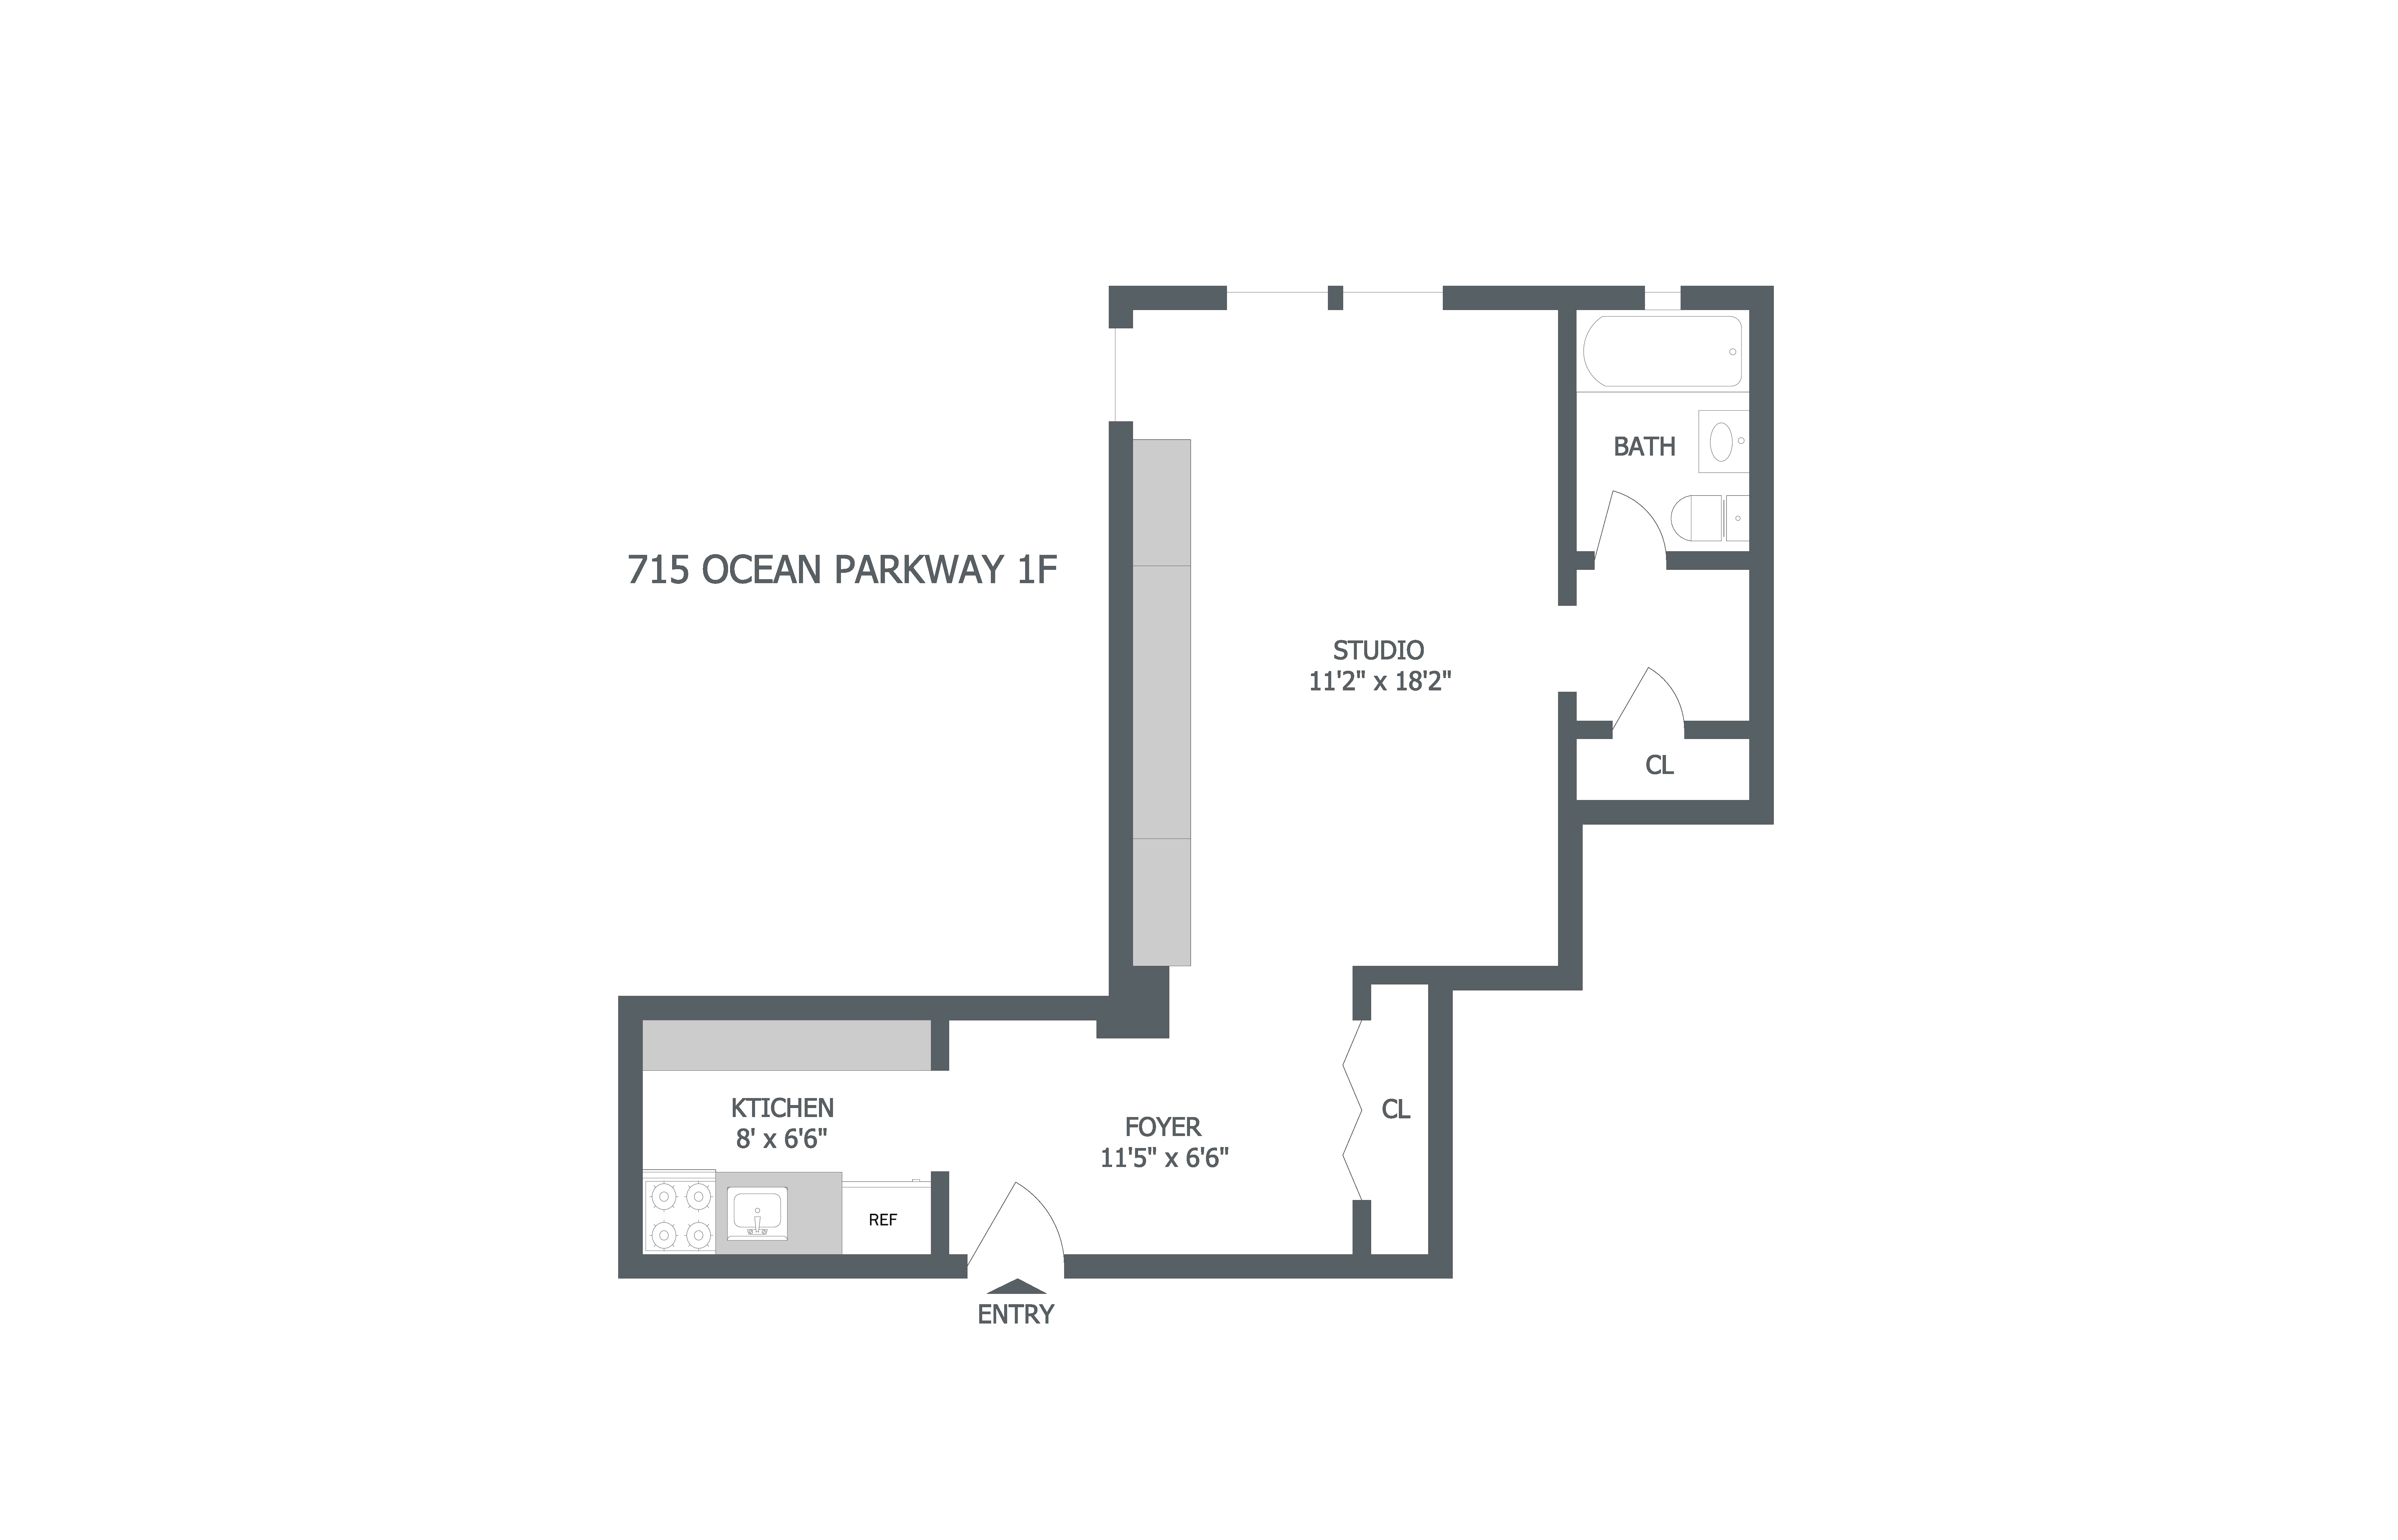 Floorplan of 715 Ocean Pkwy